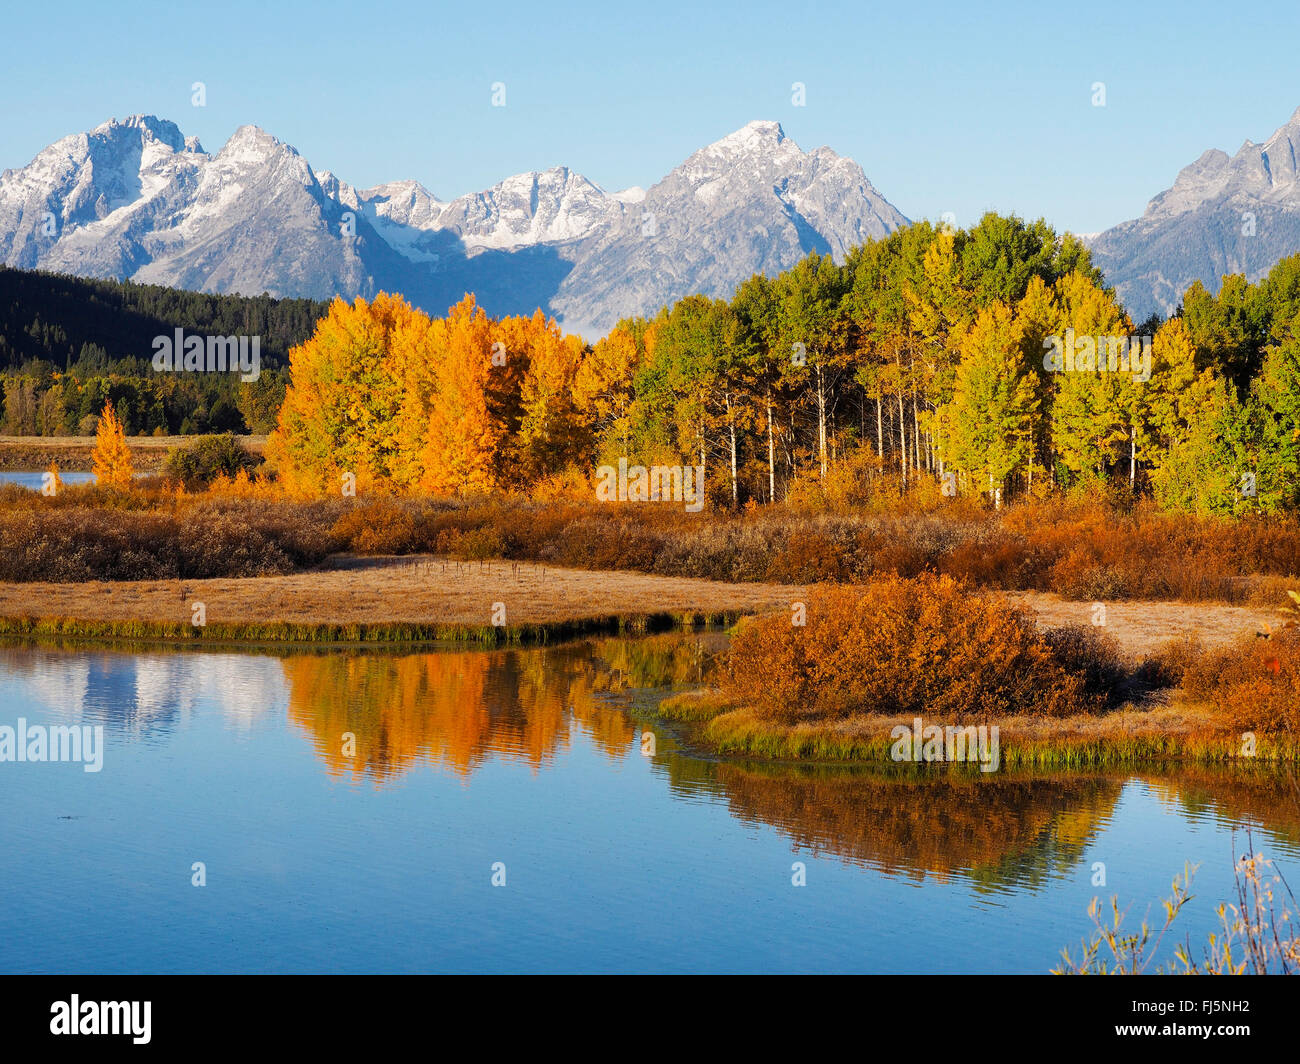 autumn mood at Oxbow bend, USA, Wyoming, Grand Teton National Park Stock Photo